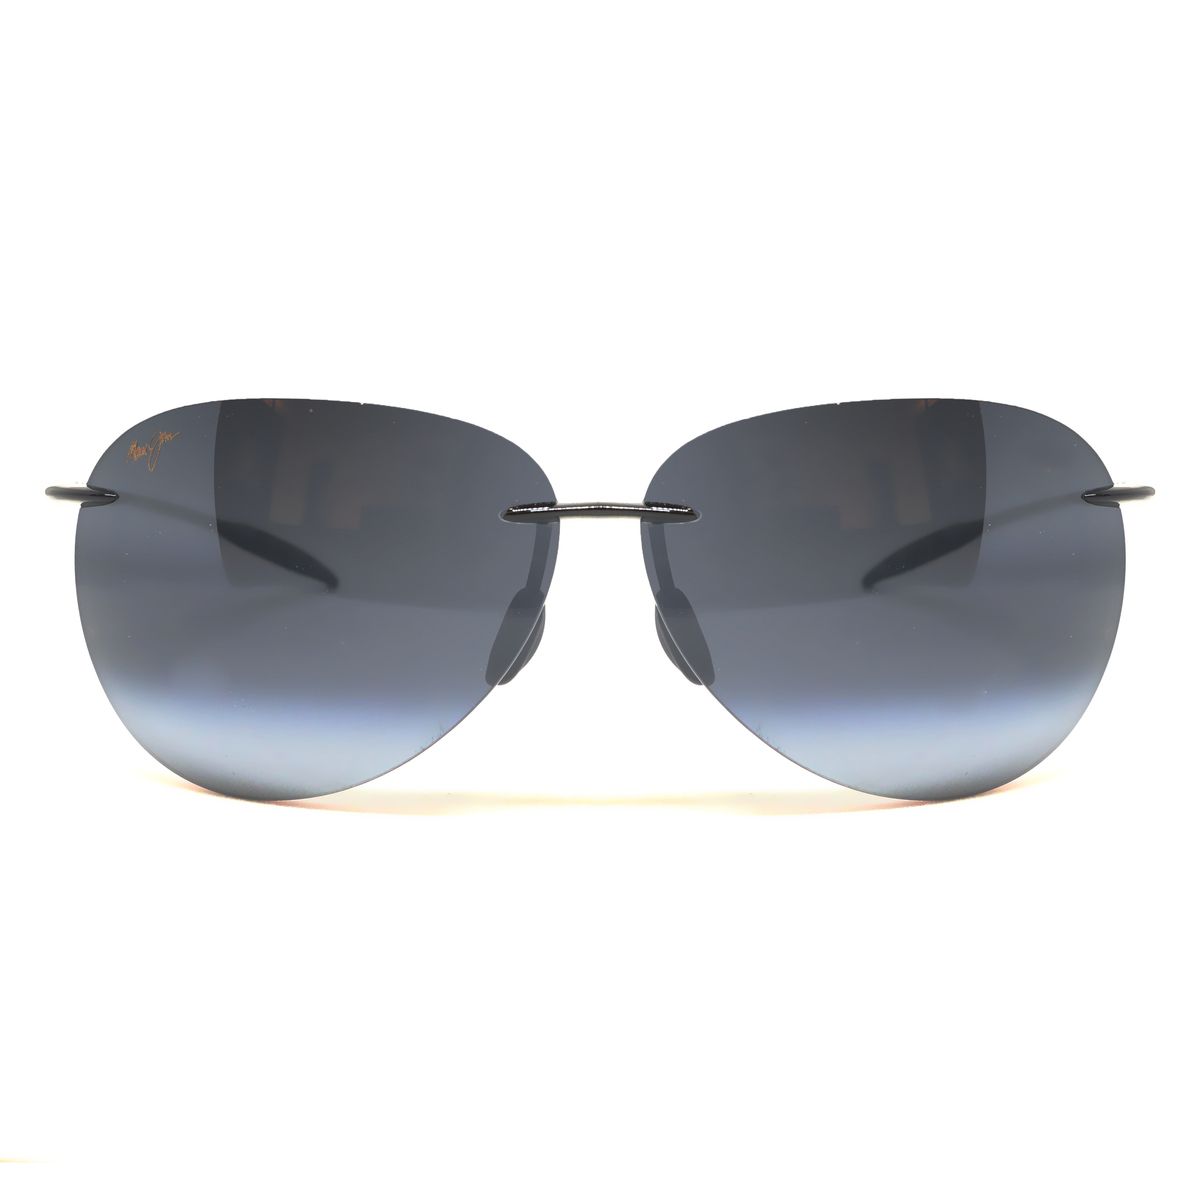 MJ421 Pilot Sunglasses 02 00 - size 62